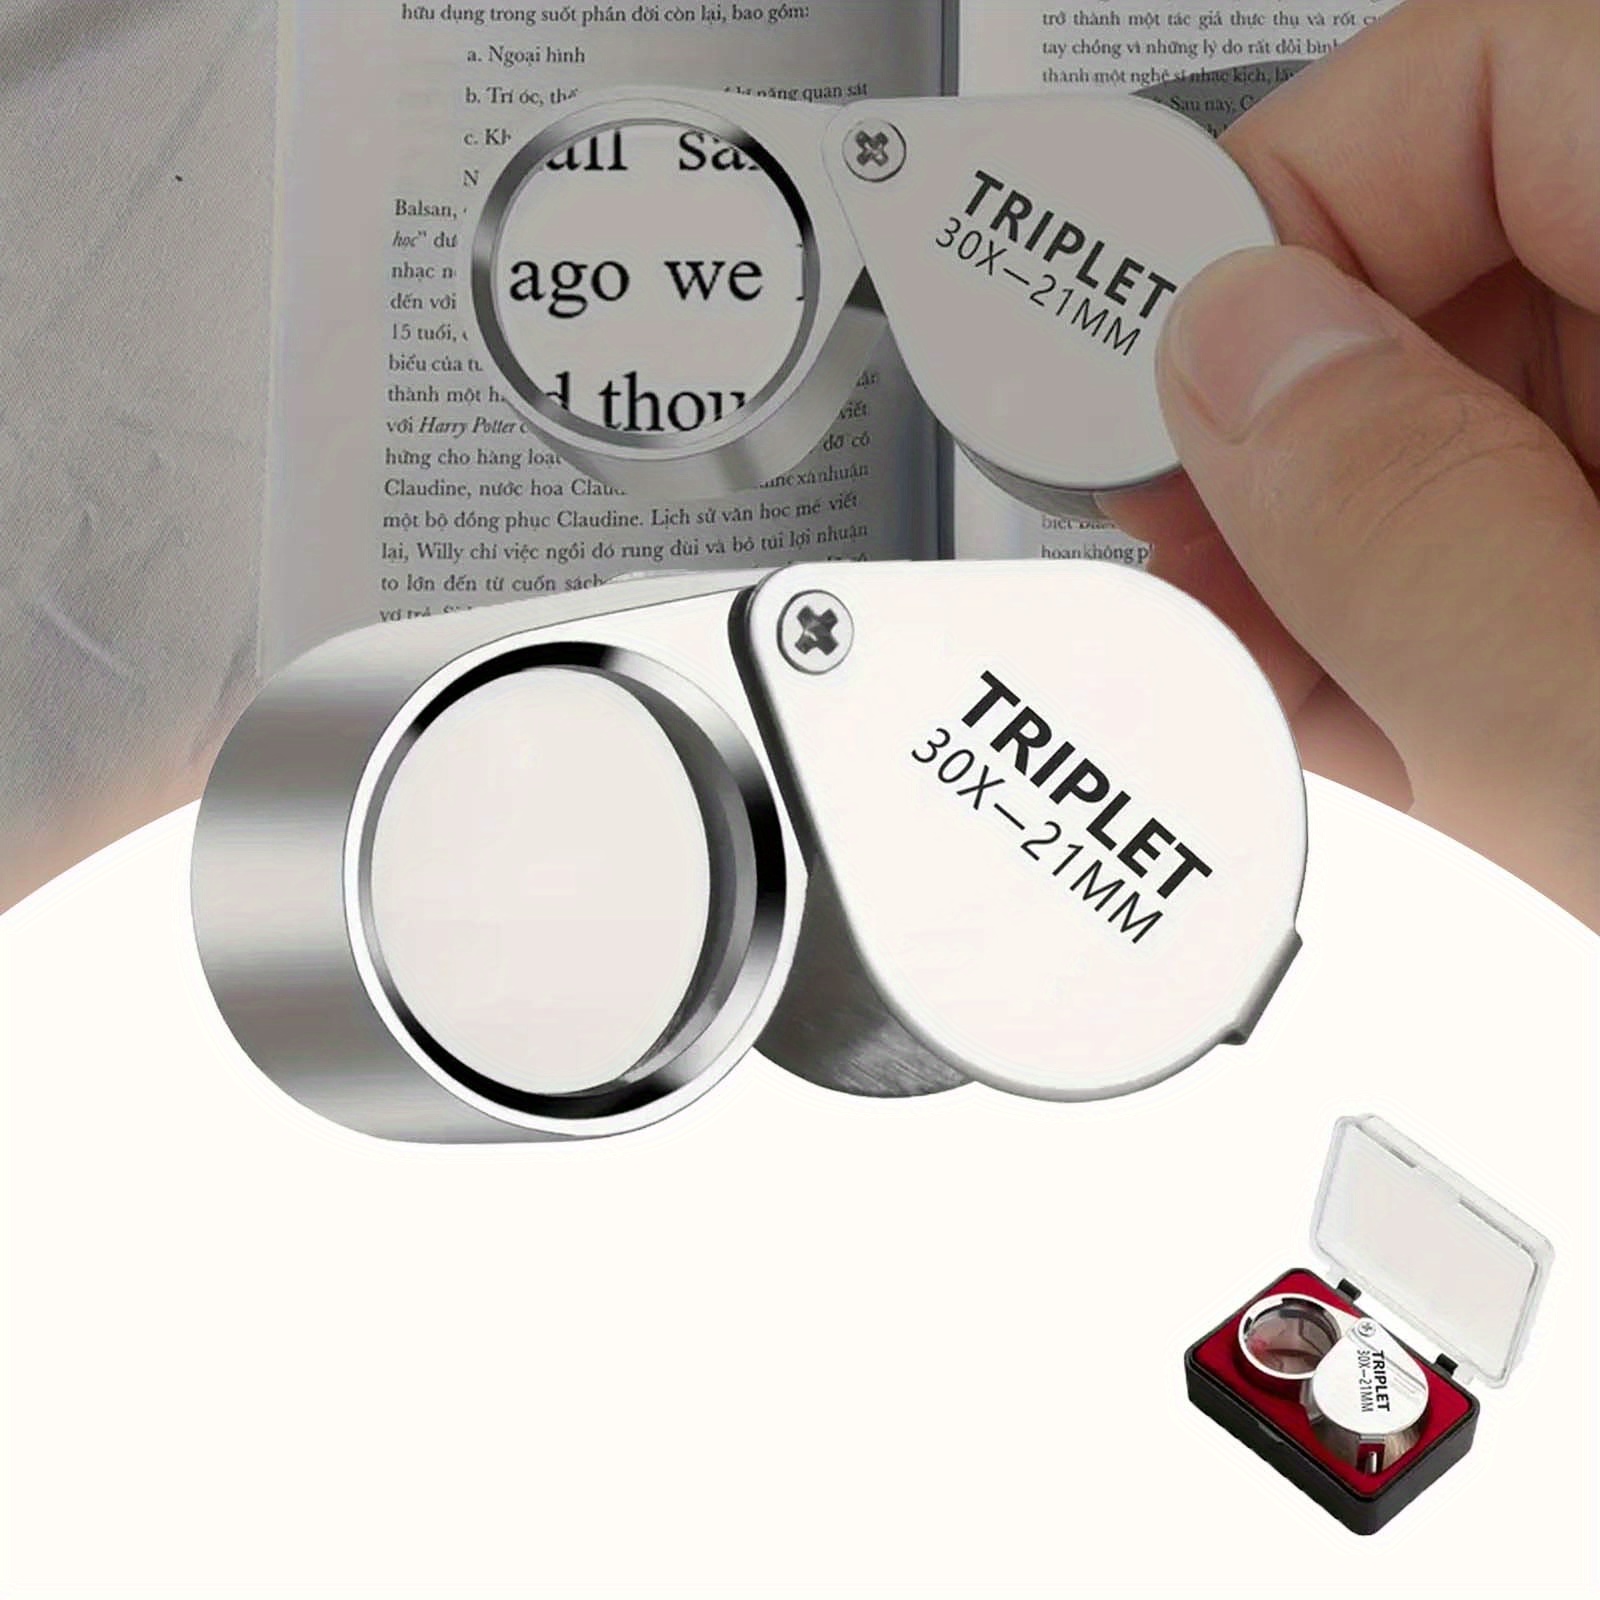 3 Led Light 30x 45x Magnifying Glass Lens Mini Pocket - Temu